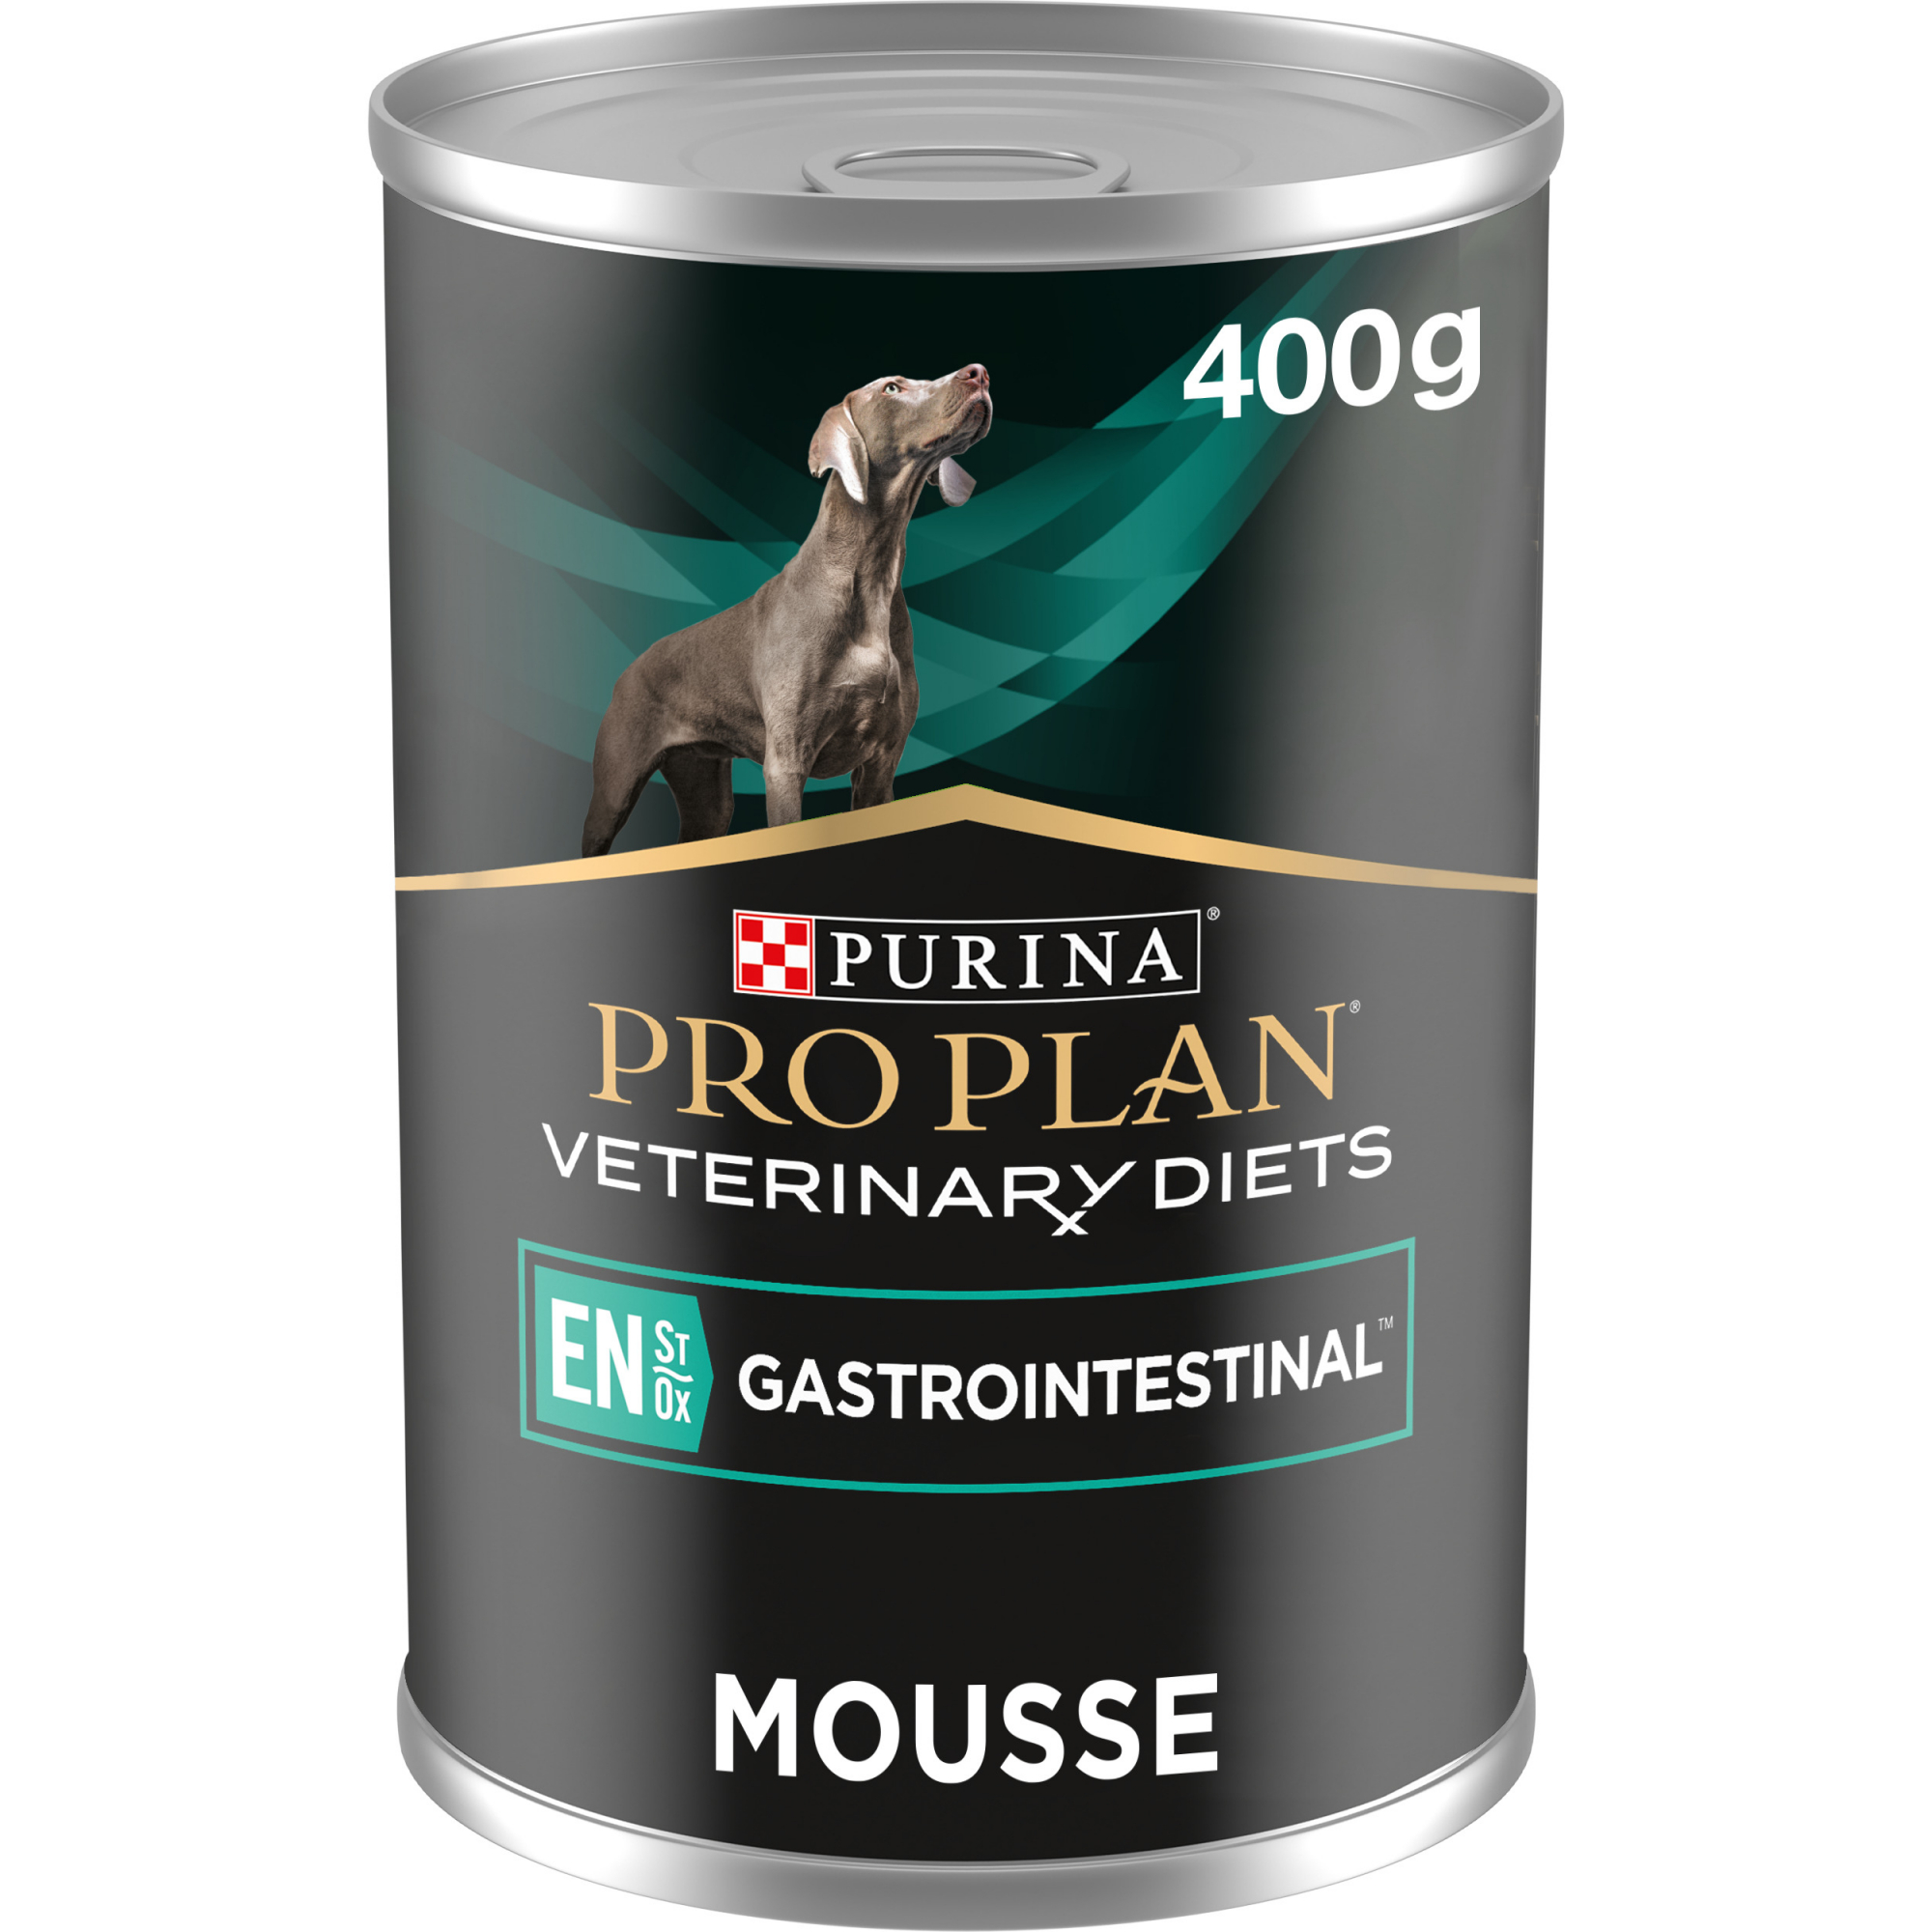 Pro Plan Veterinary Diets Gastrointestinal Comida húmeda para perros - 400g